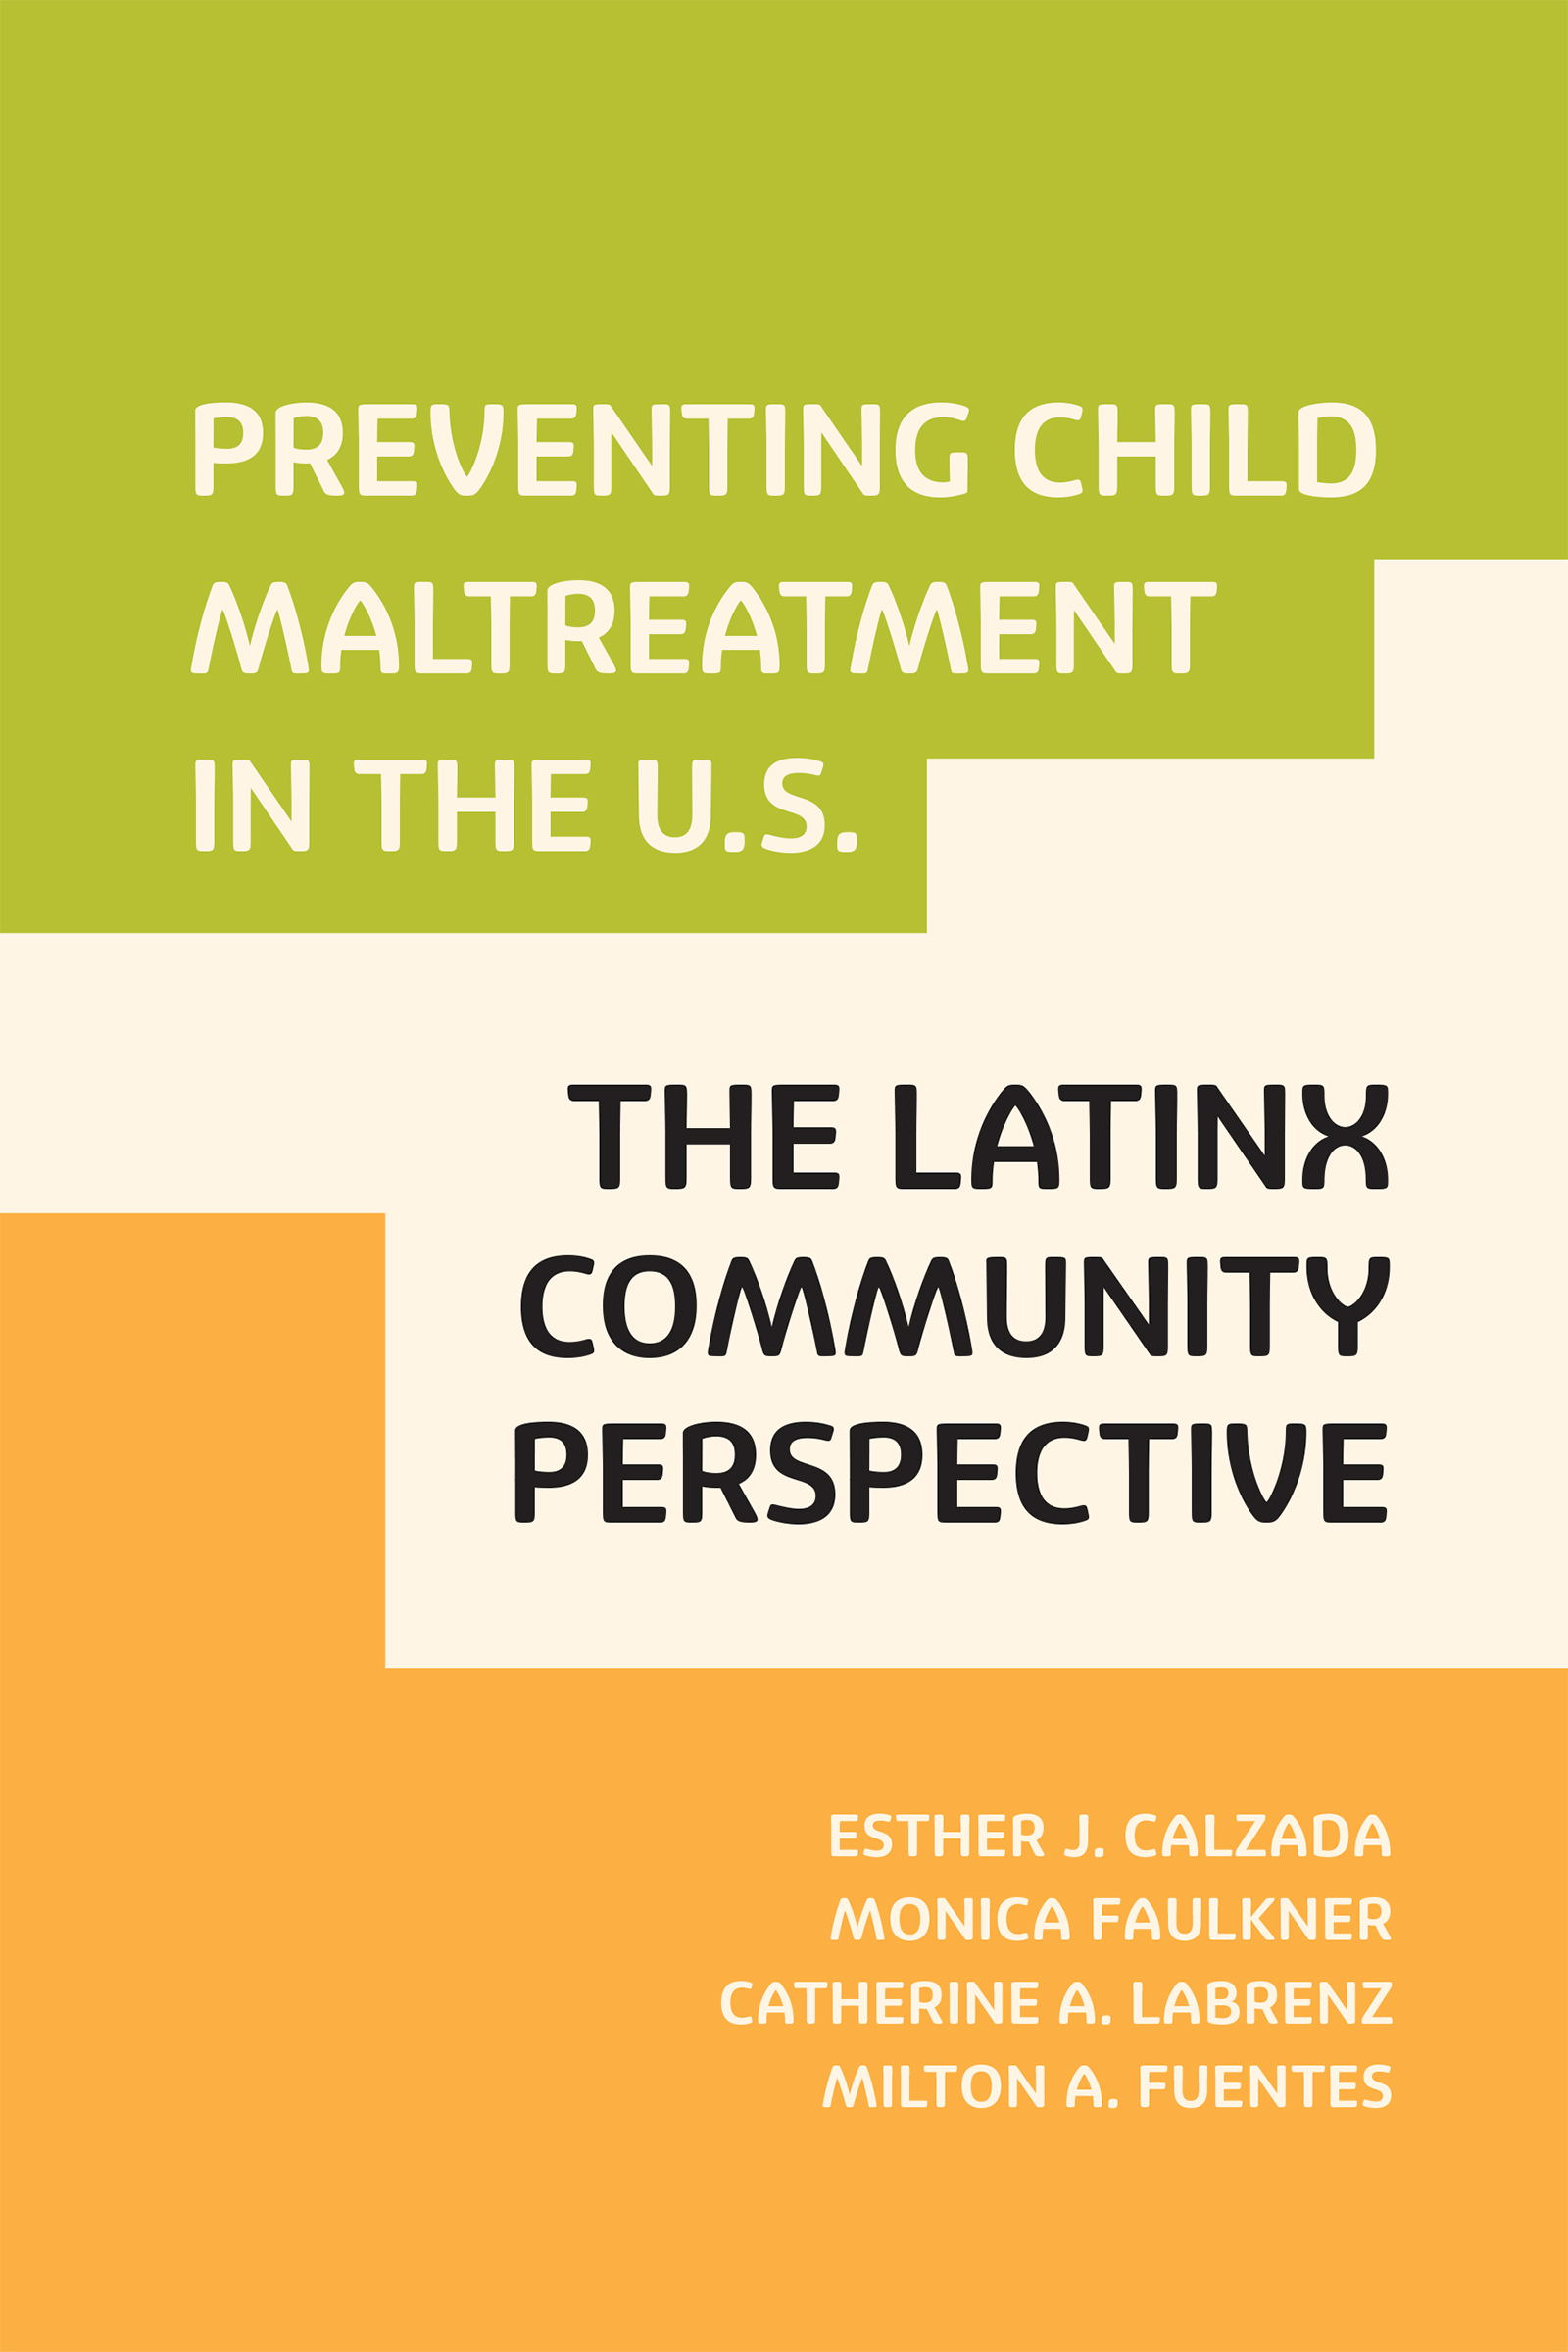 Preventing Child Maltreatment in the U.S.: The Latinx Community